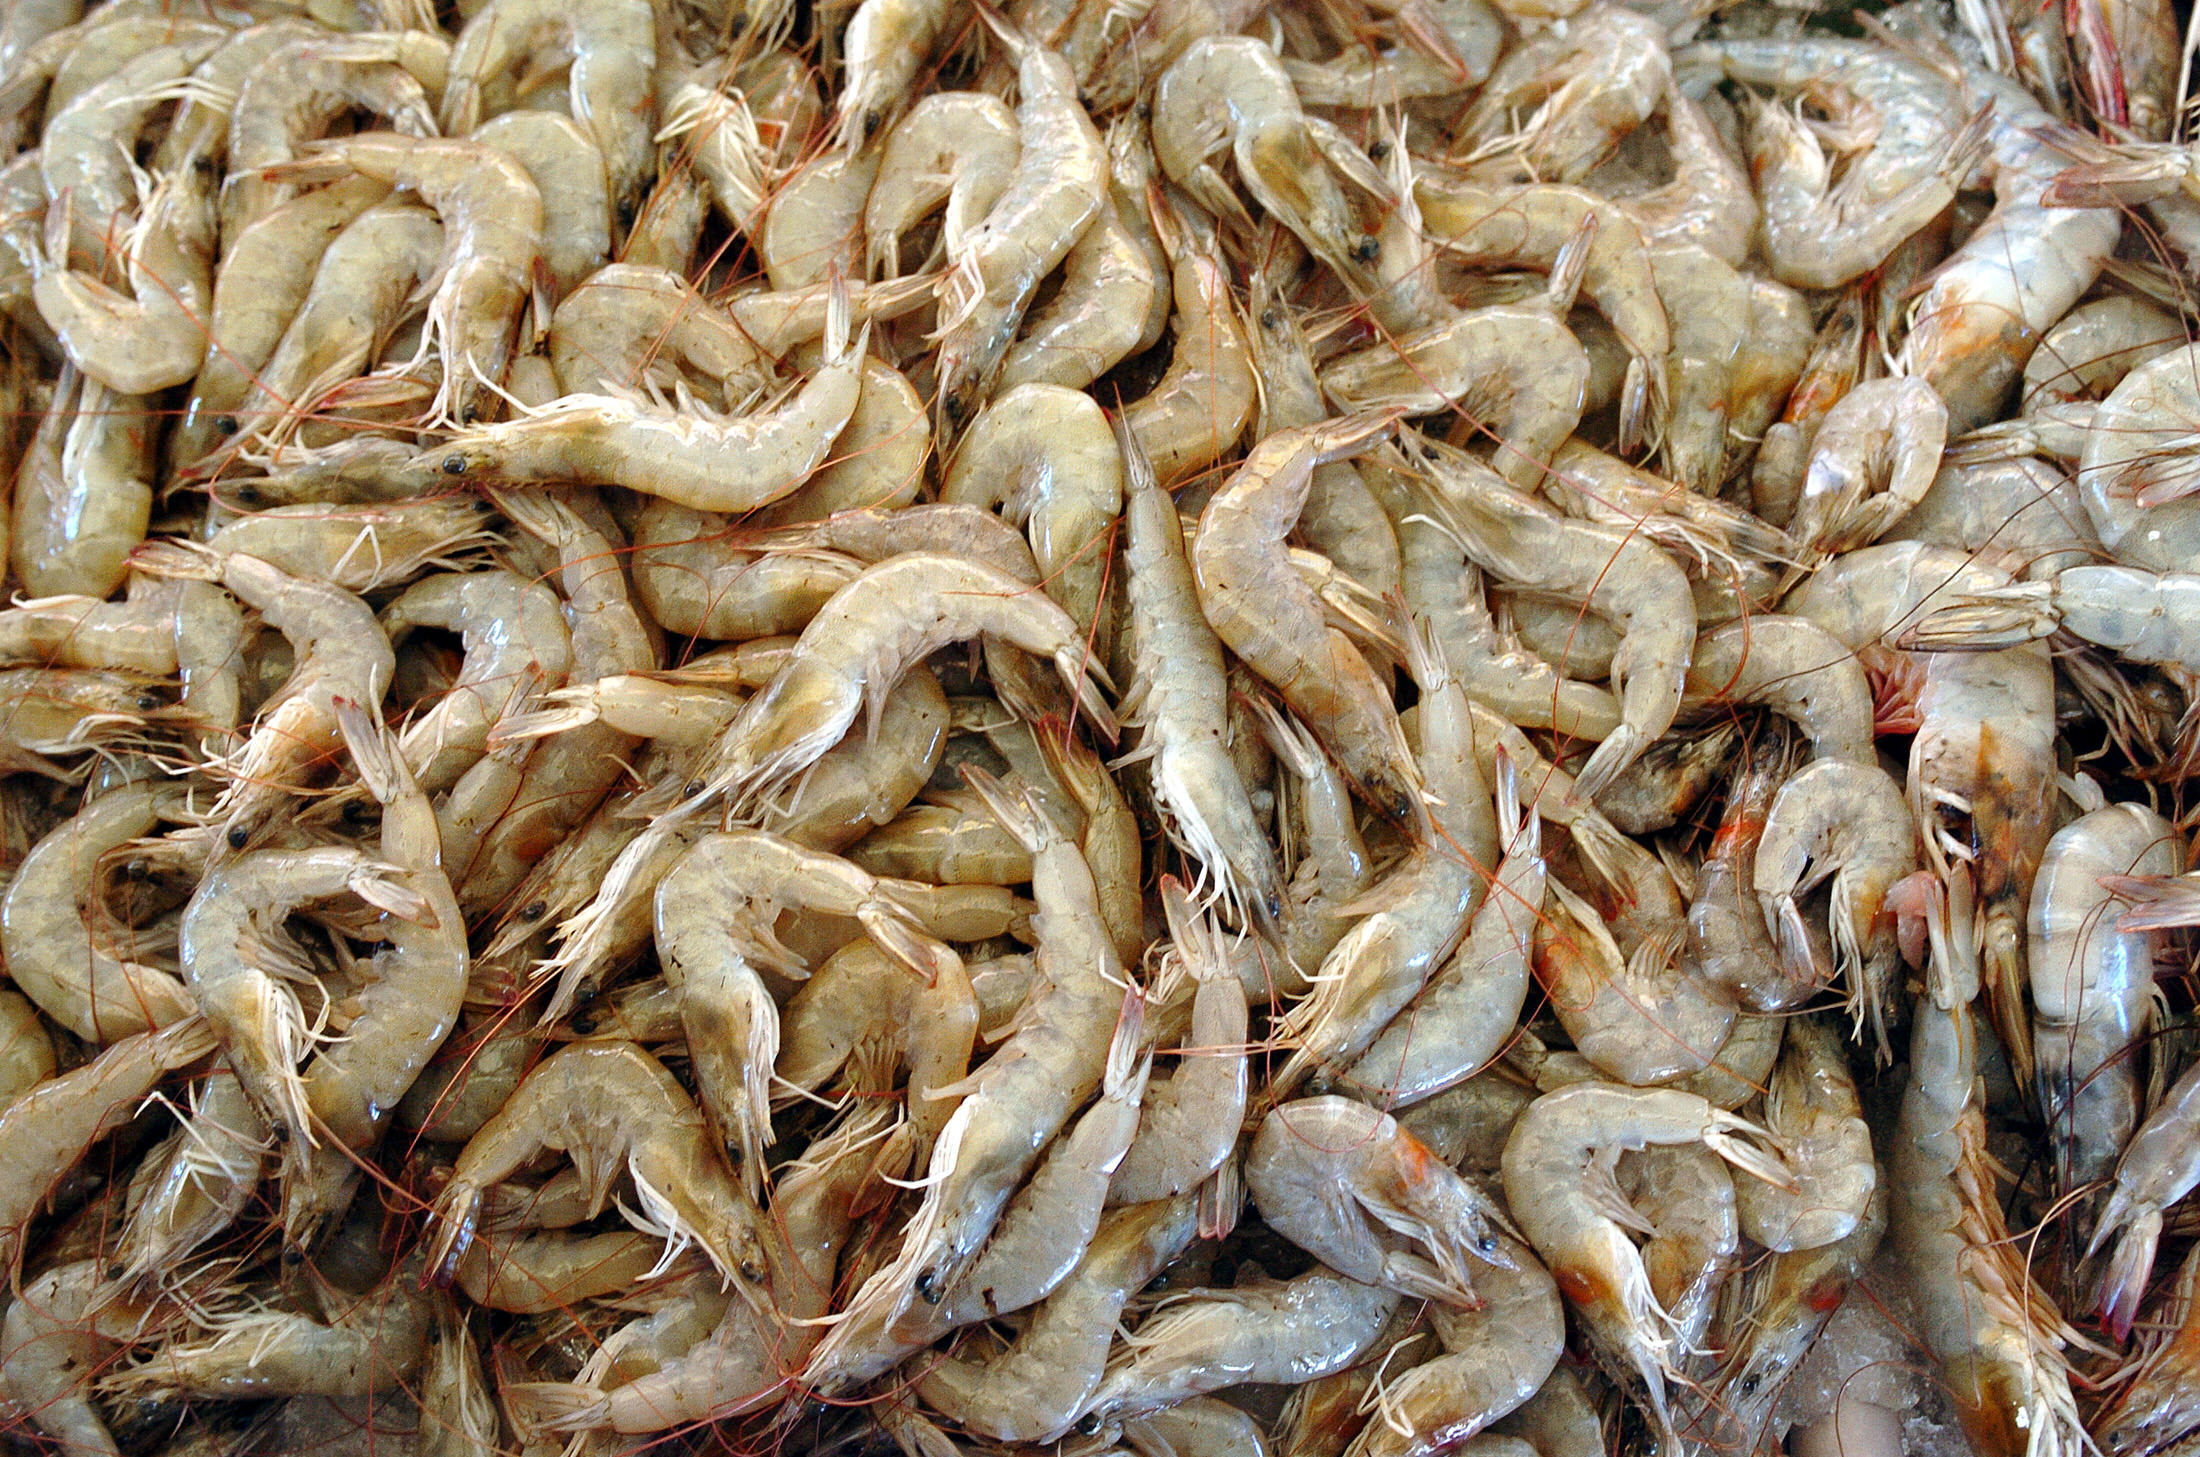 Aparecen centenares de crustáceos sin vida a orillas de playa chilena